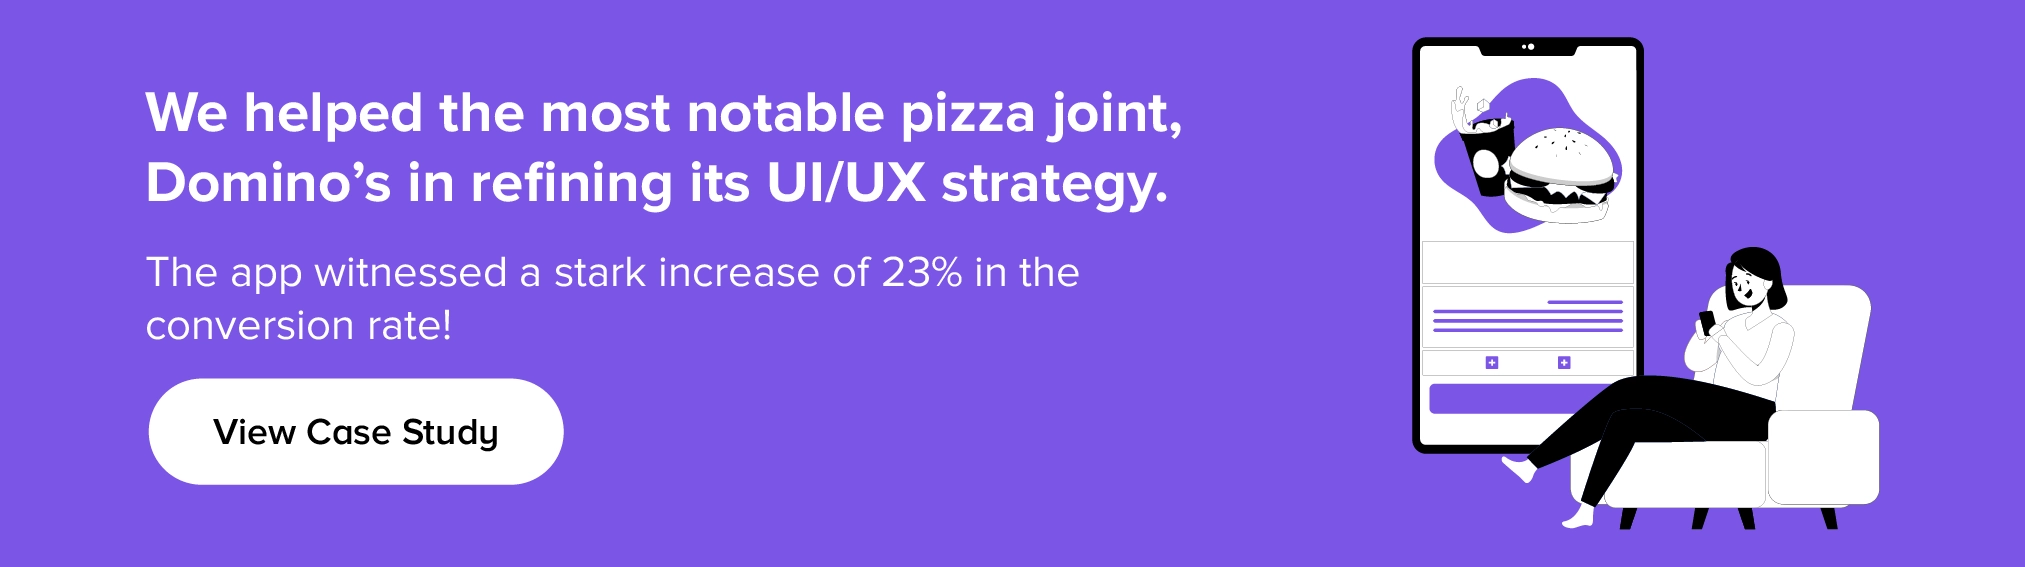 UI/UX stratejisini geliştirmek için Domino's ile nasıl işbirliği yaptık?